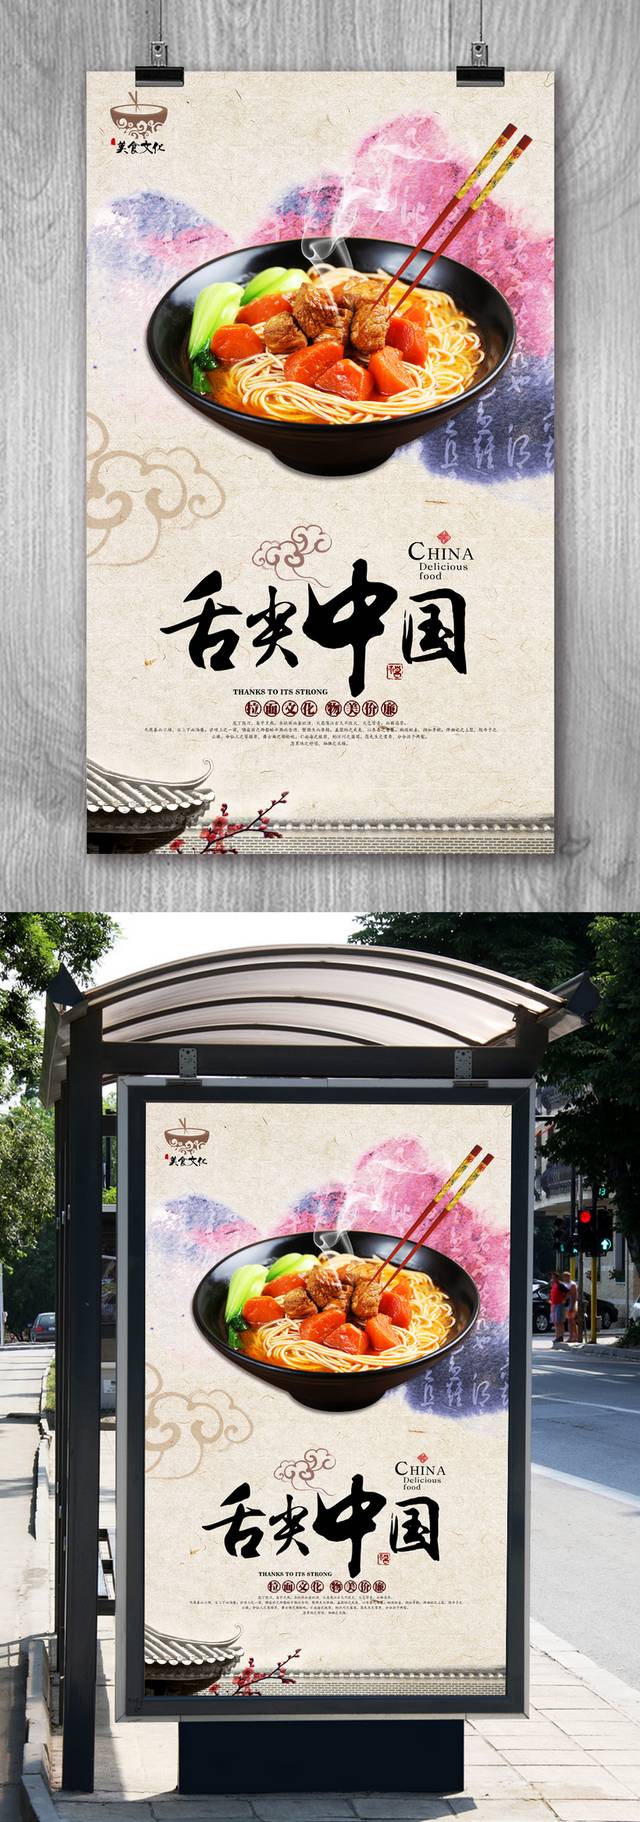 中式拉面海报设计